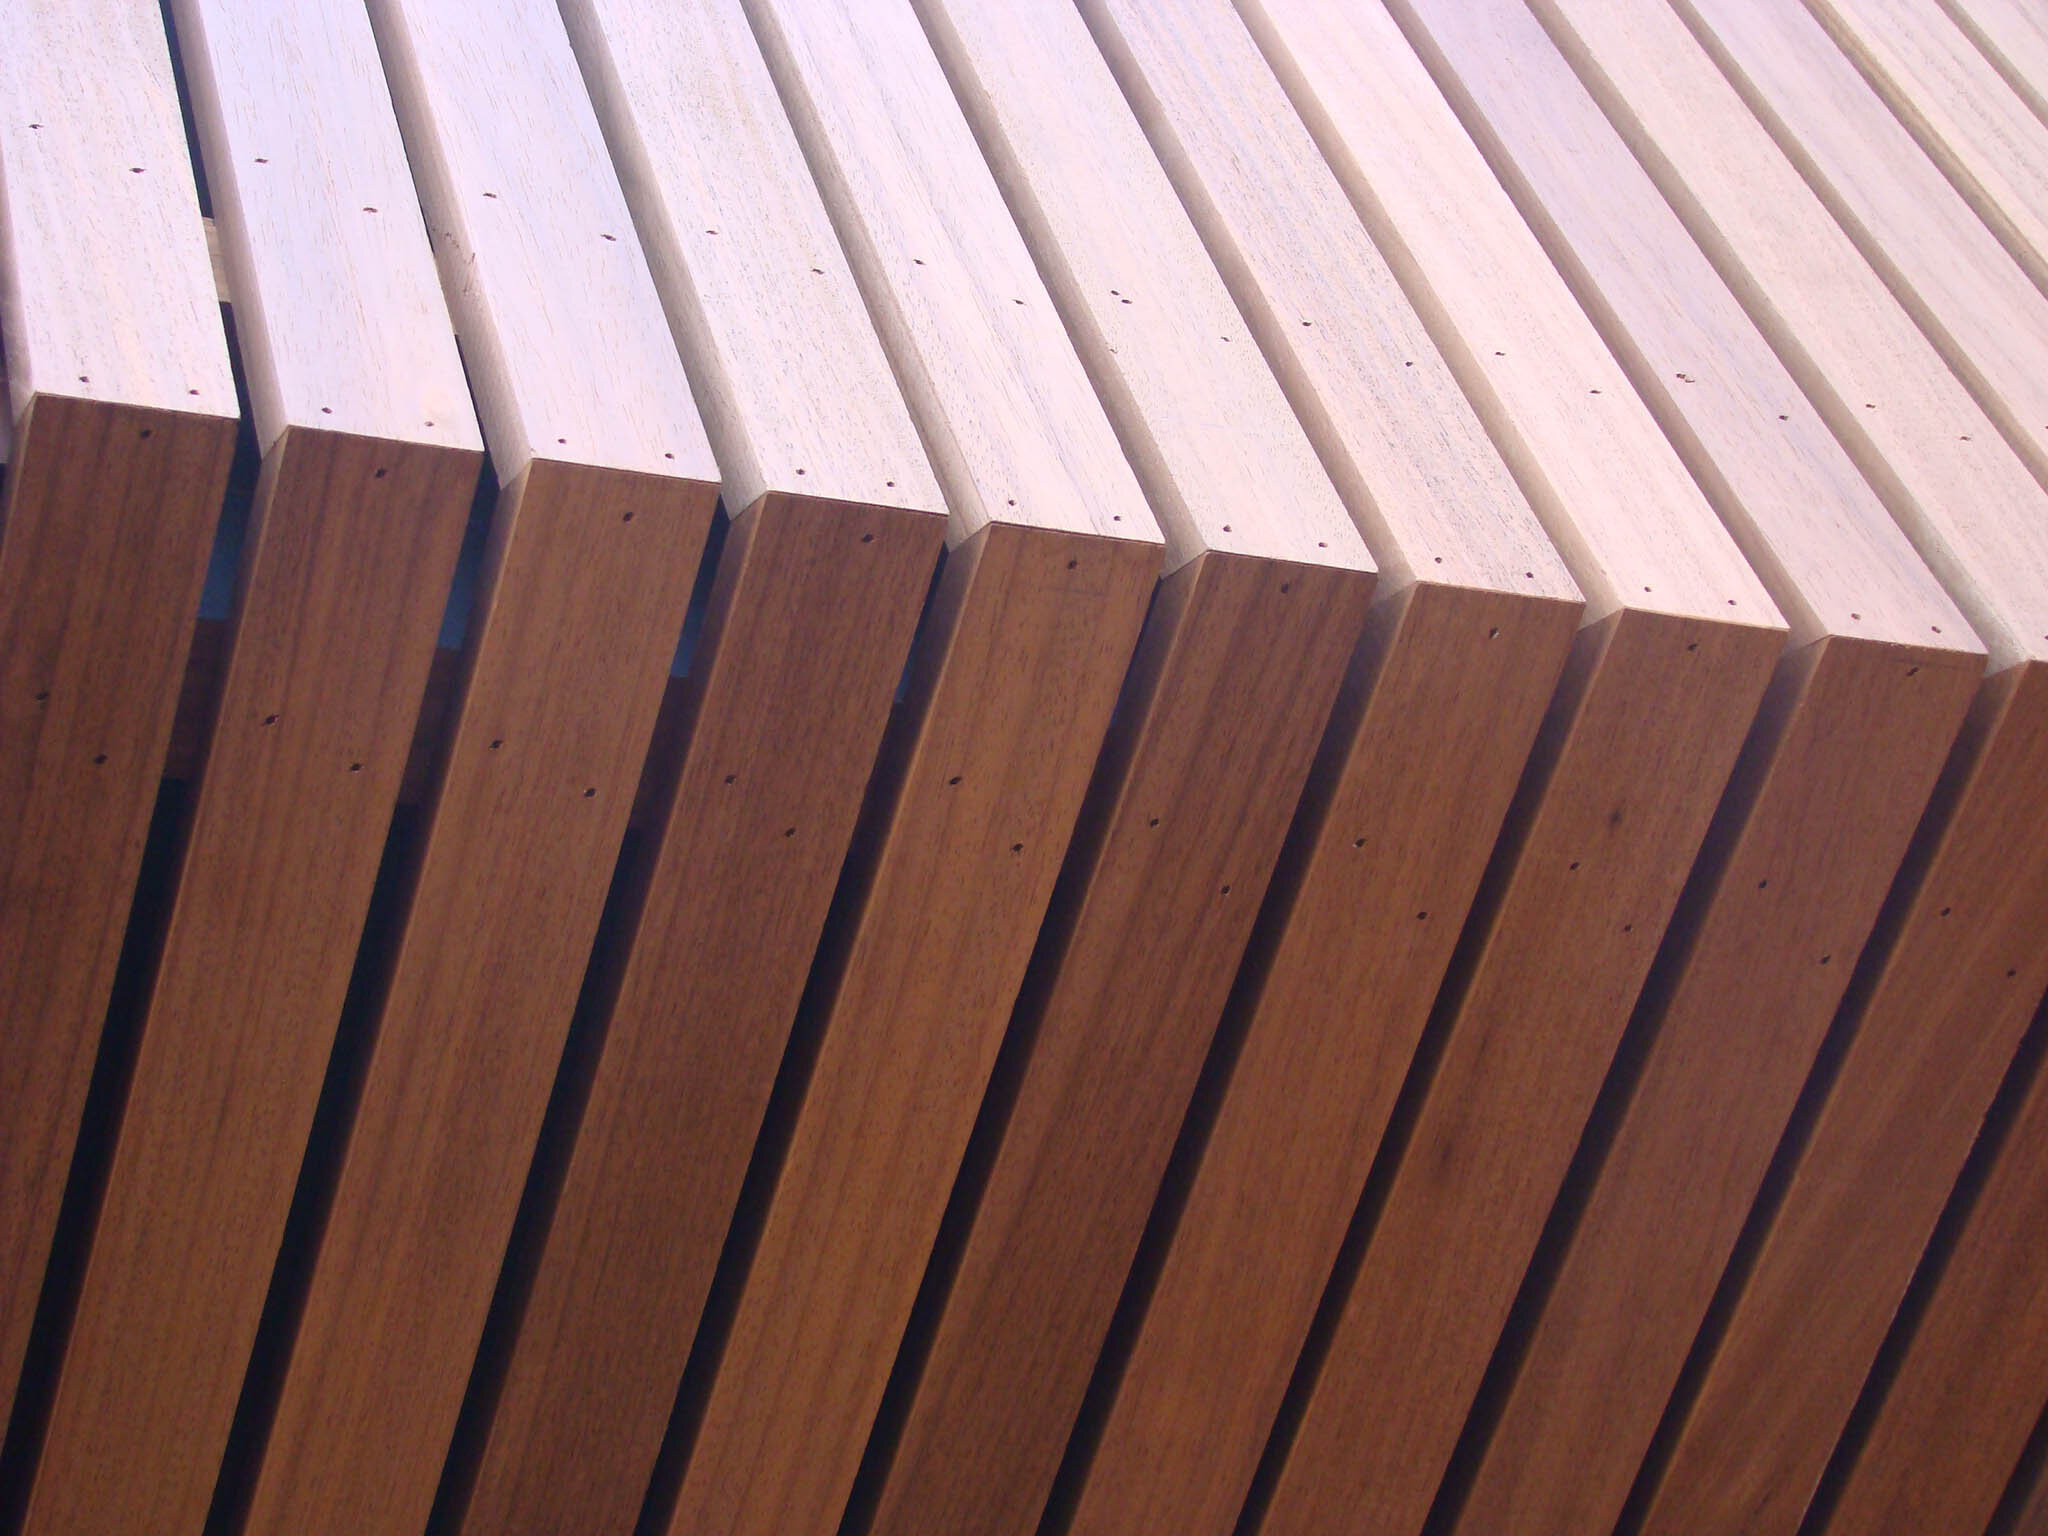 Dh22 - werf - detail houten afwerking.jpg